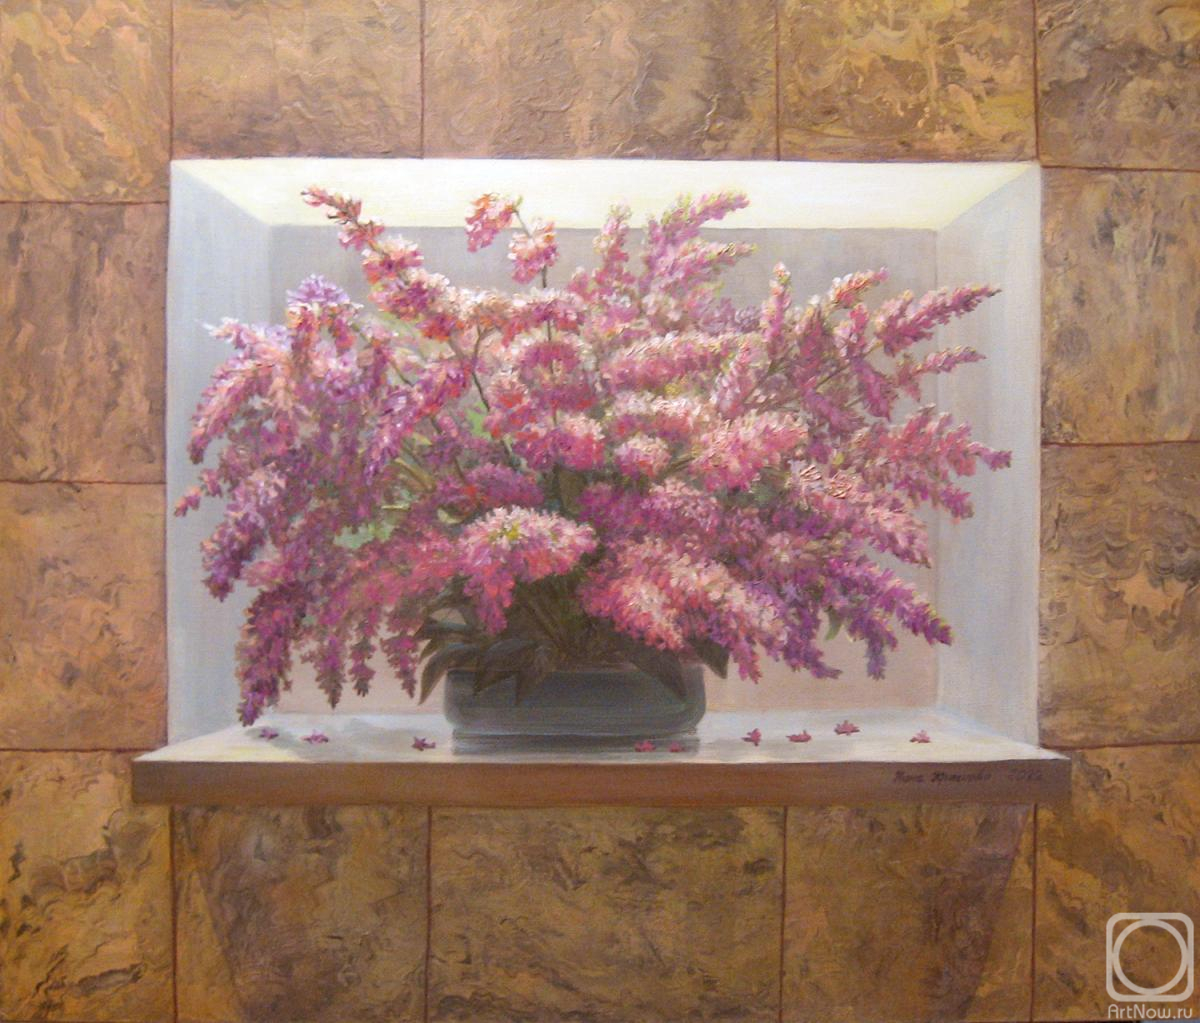 Krasnova Nina. Persian lilac in a niche